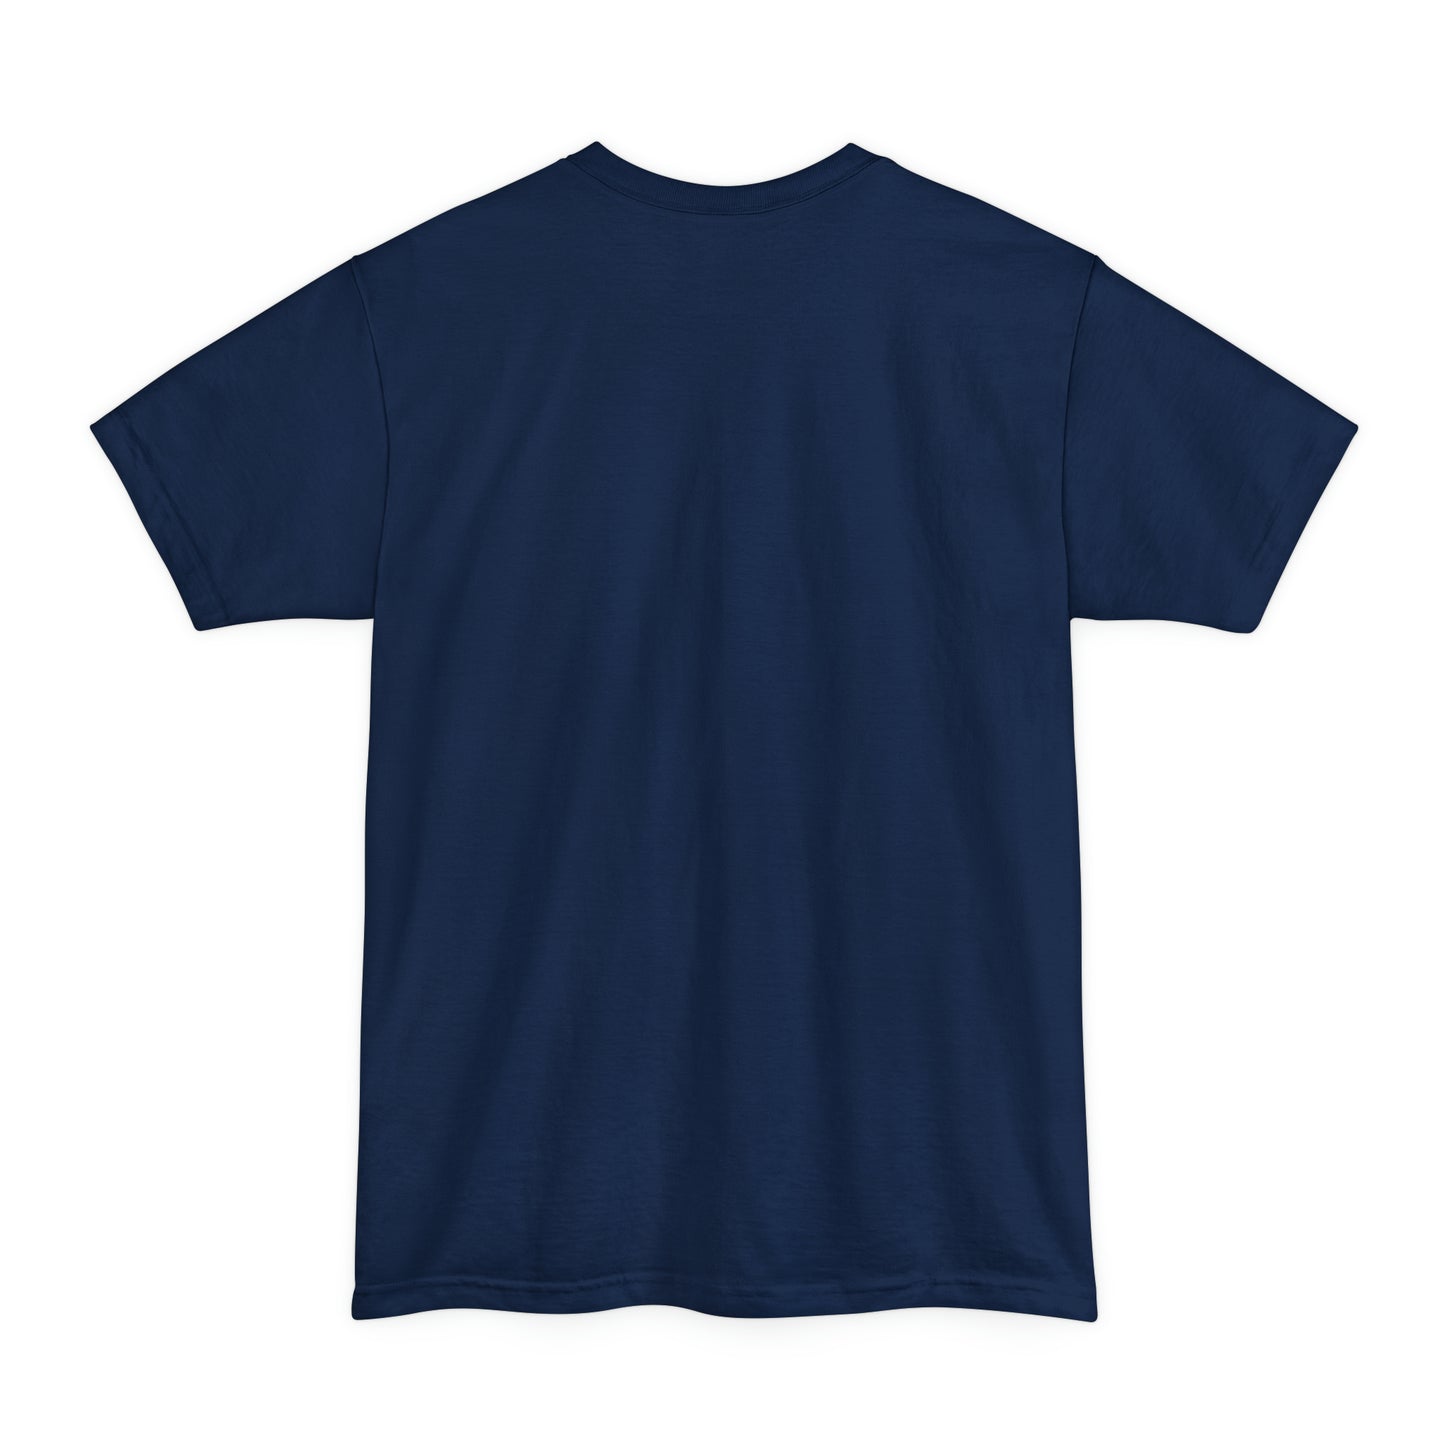 Big Bad Jon BIG & TALL Unisex Tall Beefy-T® T-Shirt